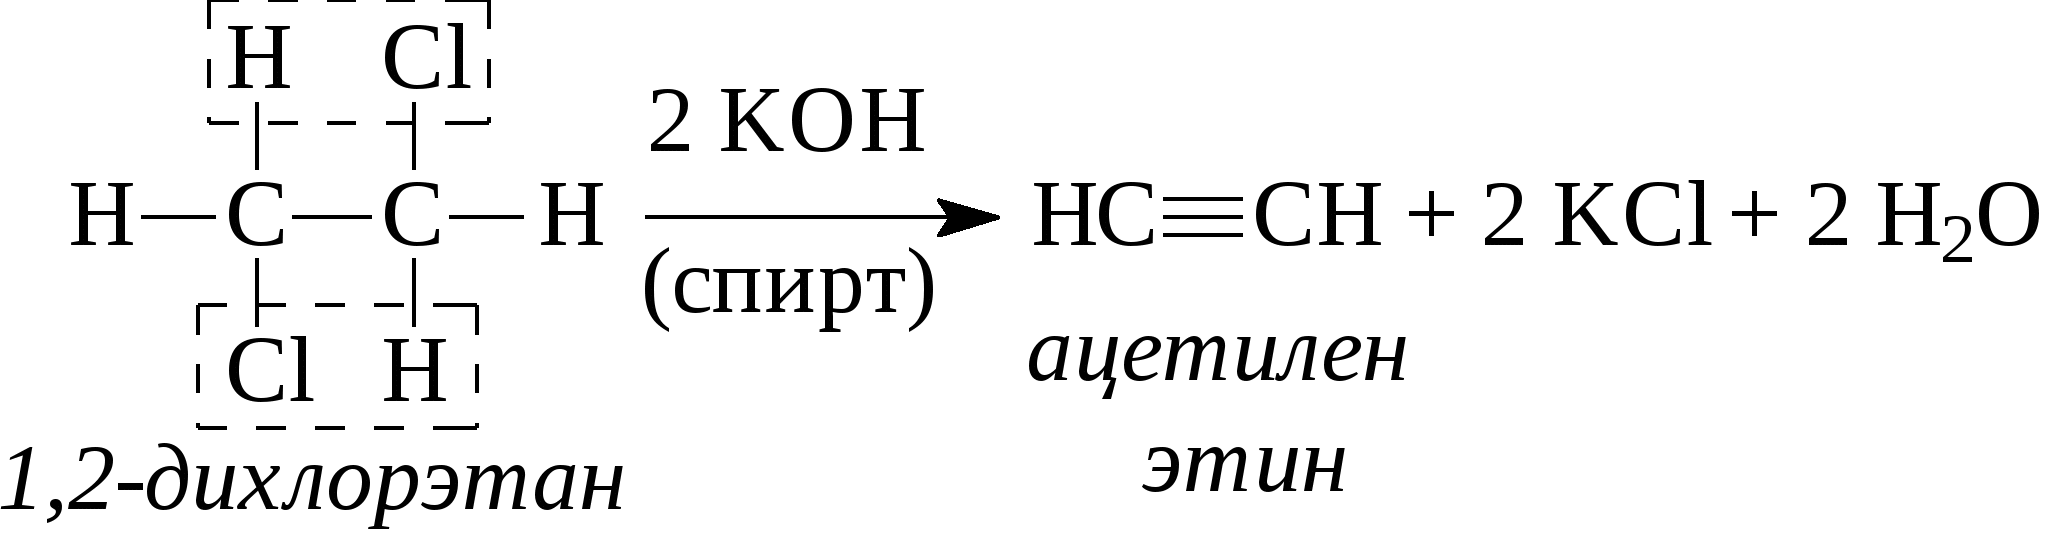 Ацетилен и натрий реакция. Ацетилен в 11 дихлорэтан. 1 2 Дихлорэтан этин. 1 2 Дихлорэтан ацетилен реакция. Ch кислотность алкинов.